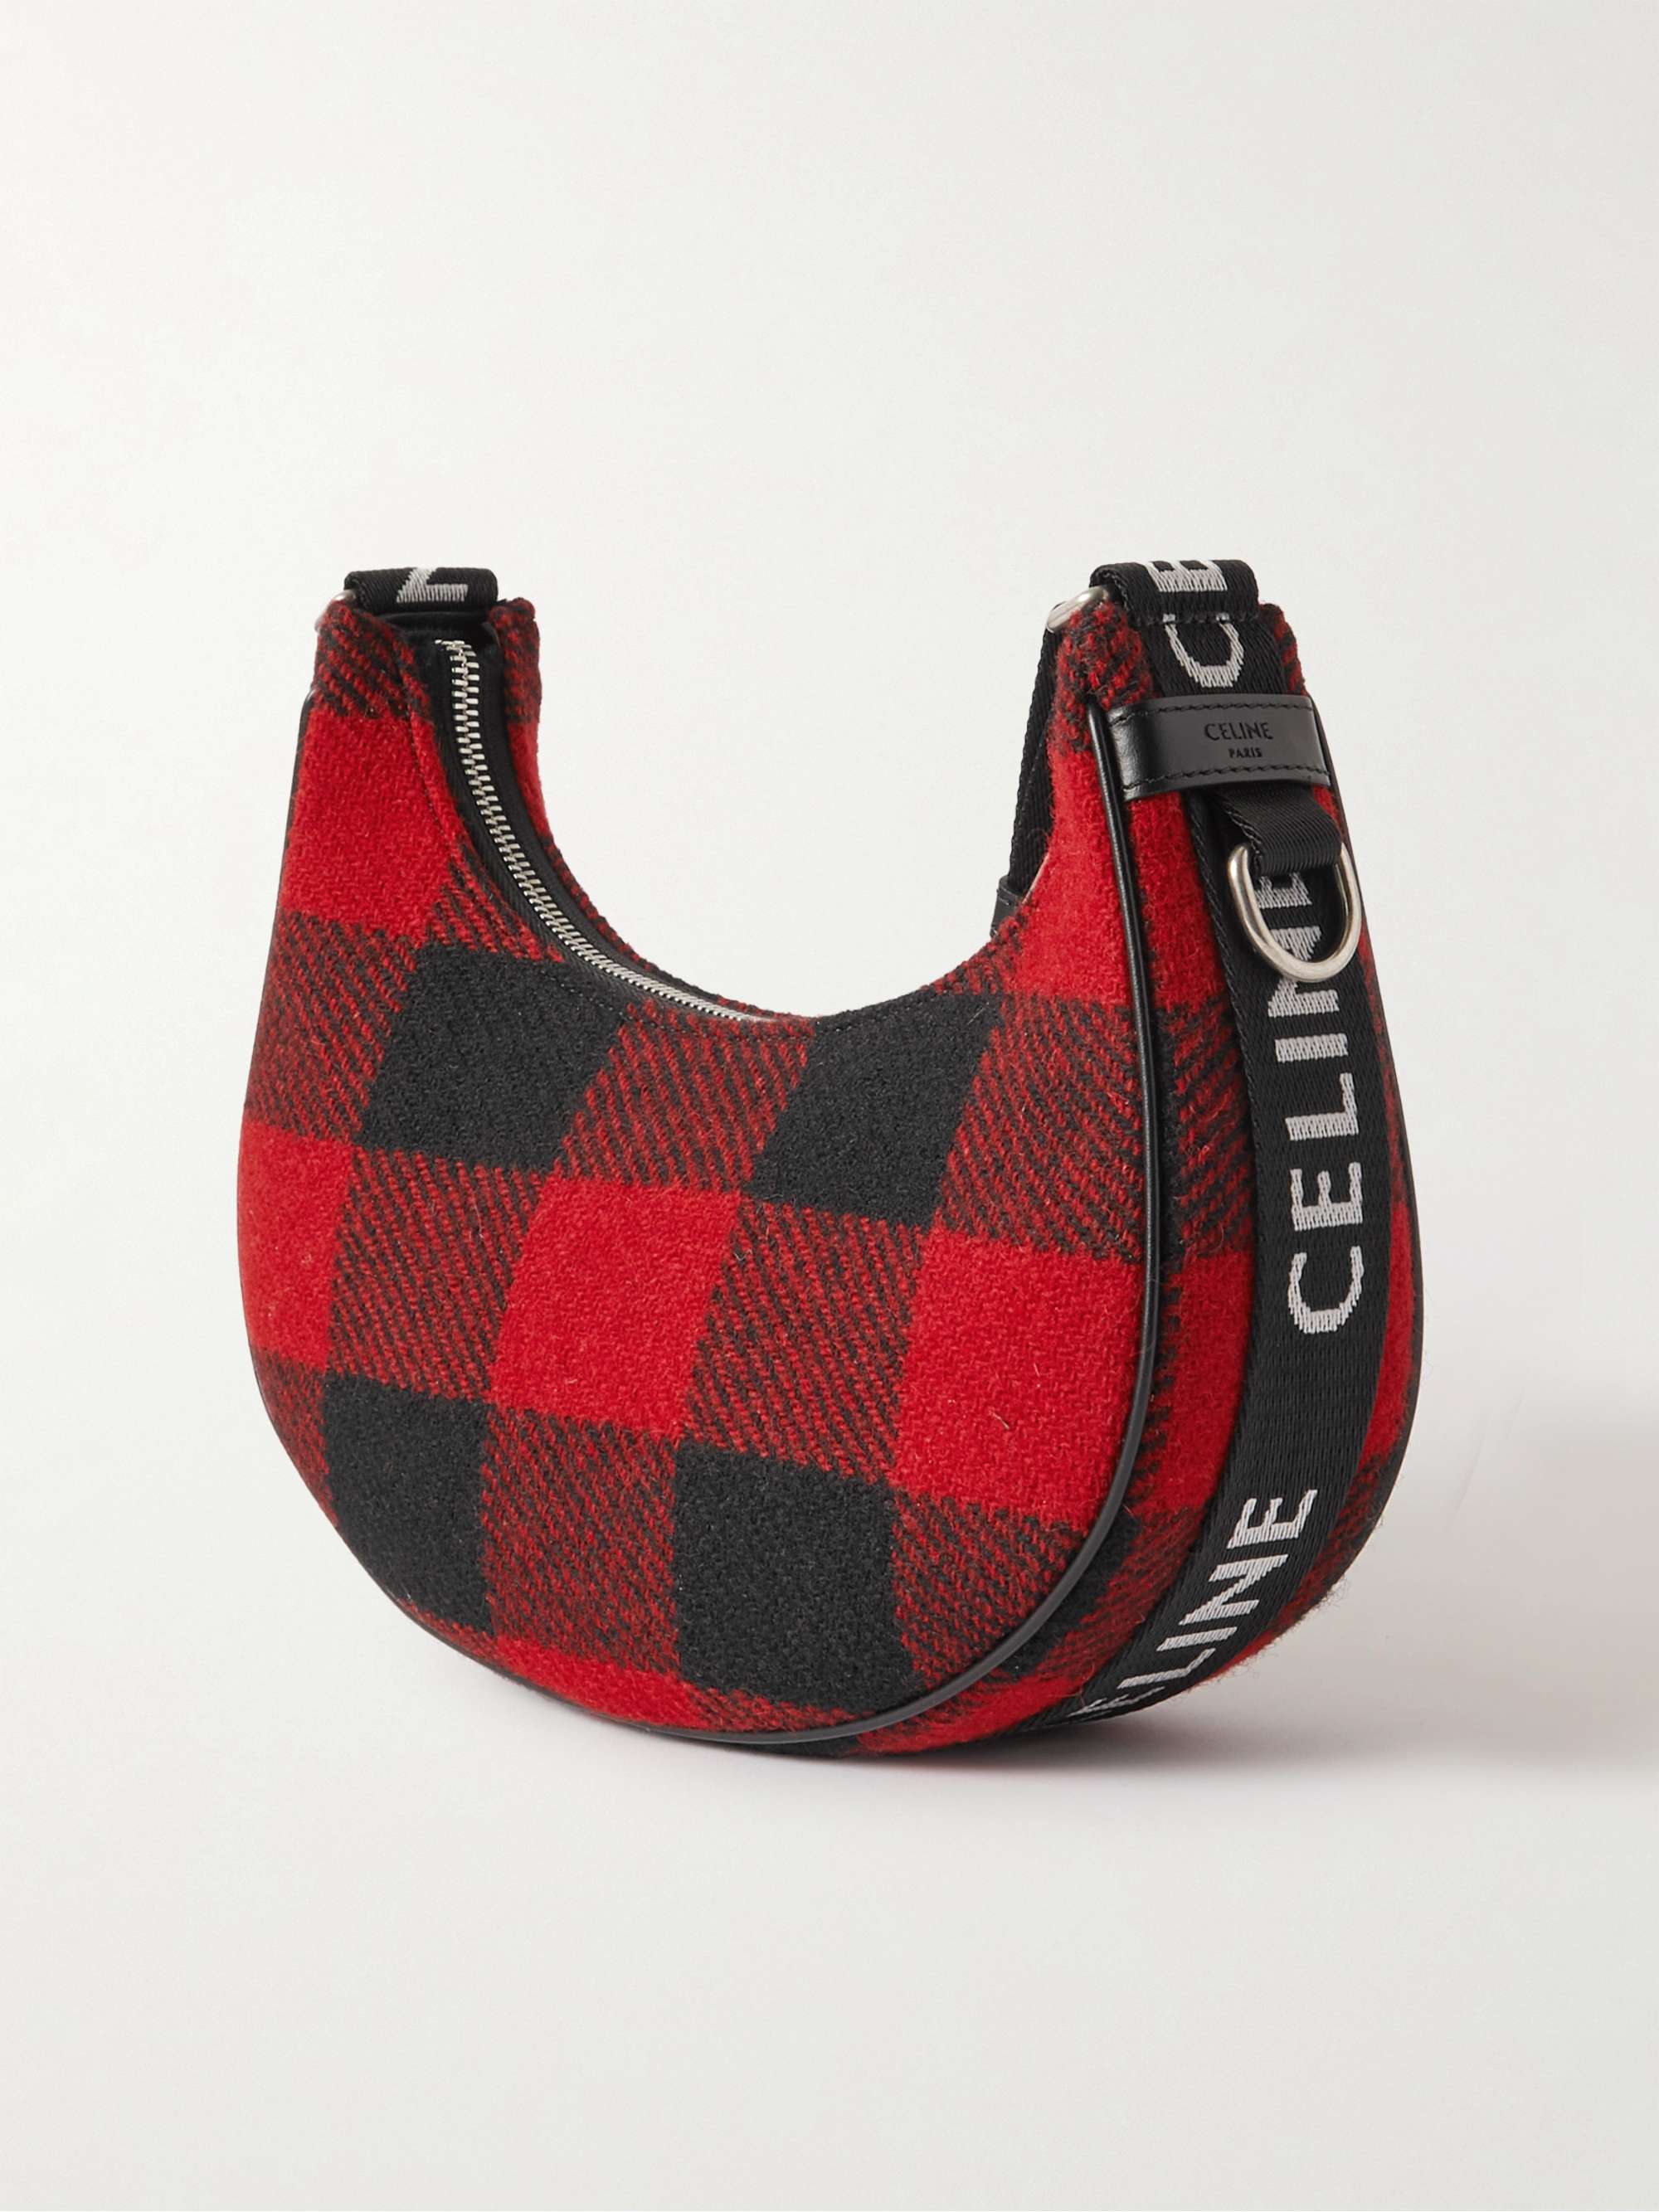 CELINE HOMME Ava Leather-Trimmed Flannel Messenger Bag